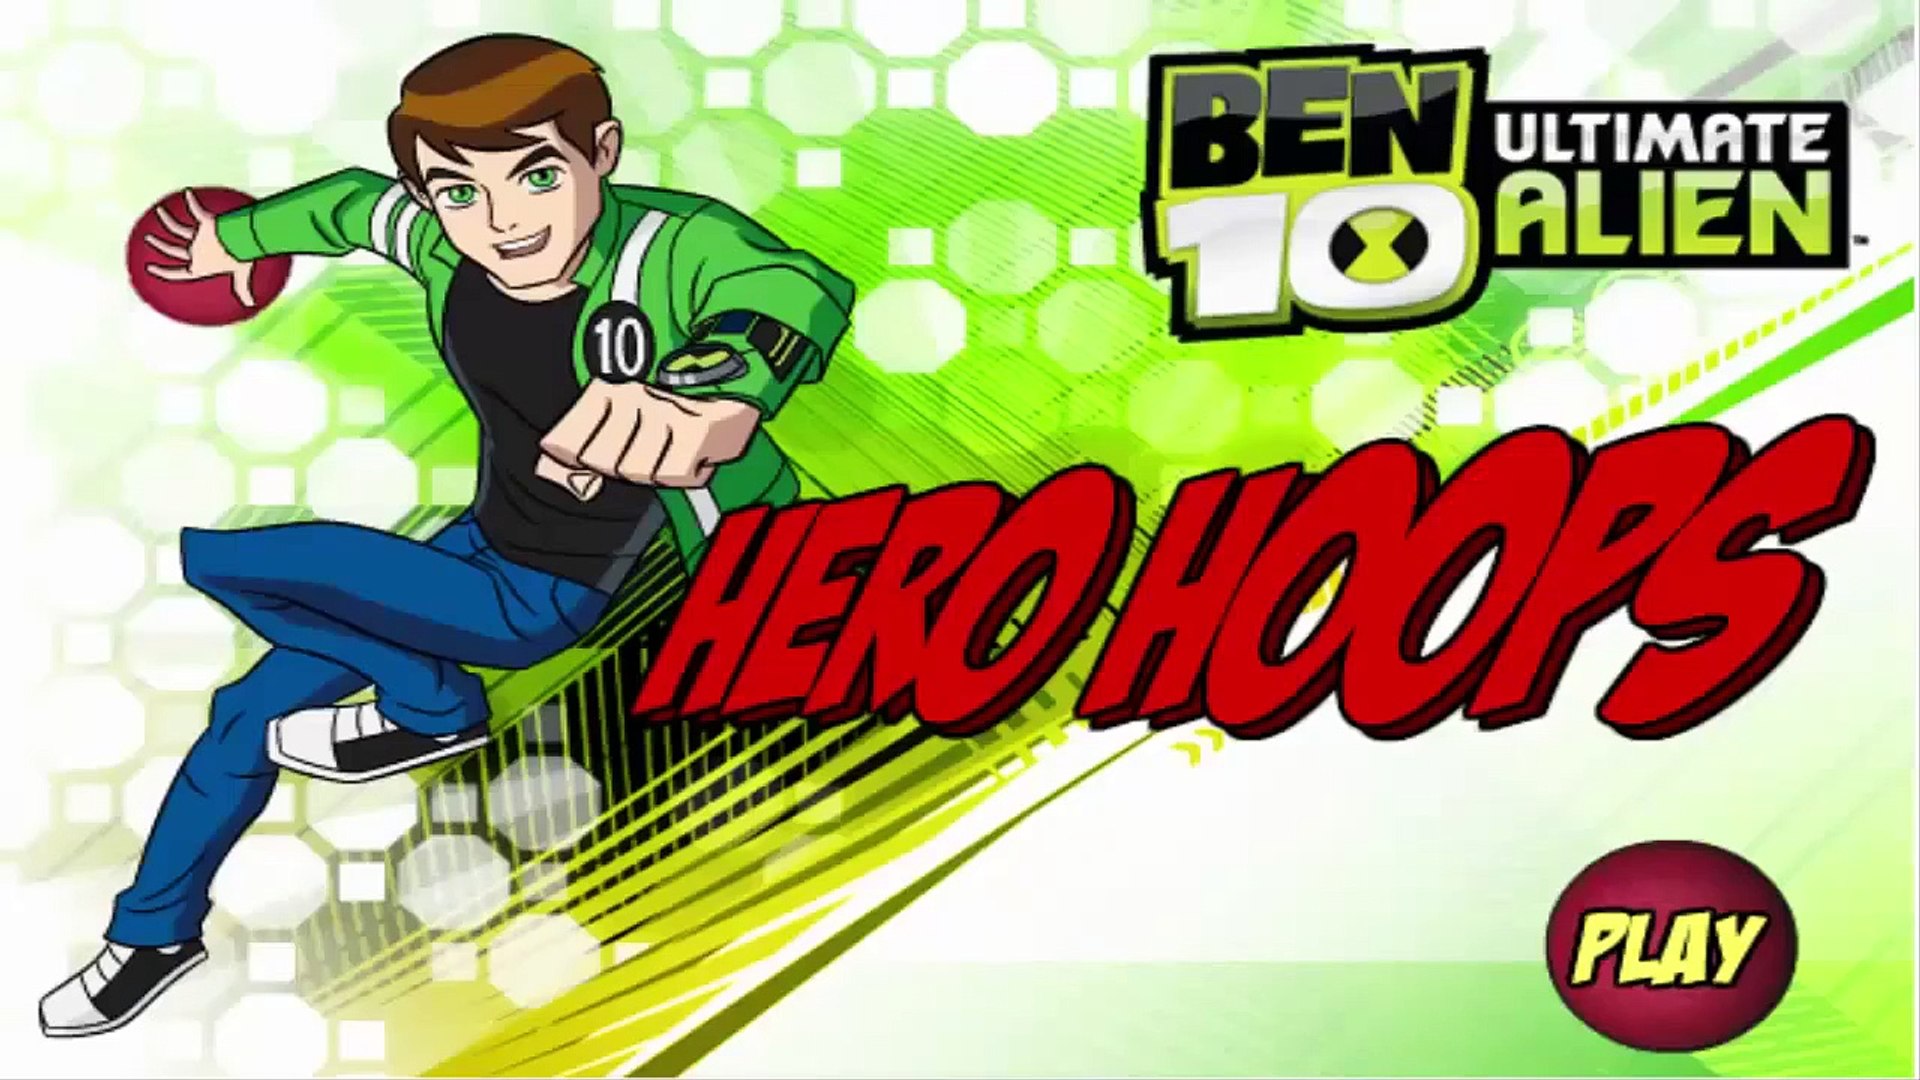 ben10babygames – Ben 10 baby games offers you a wide range of ben